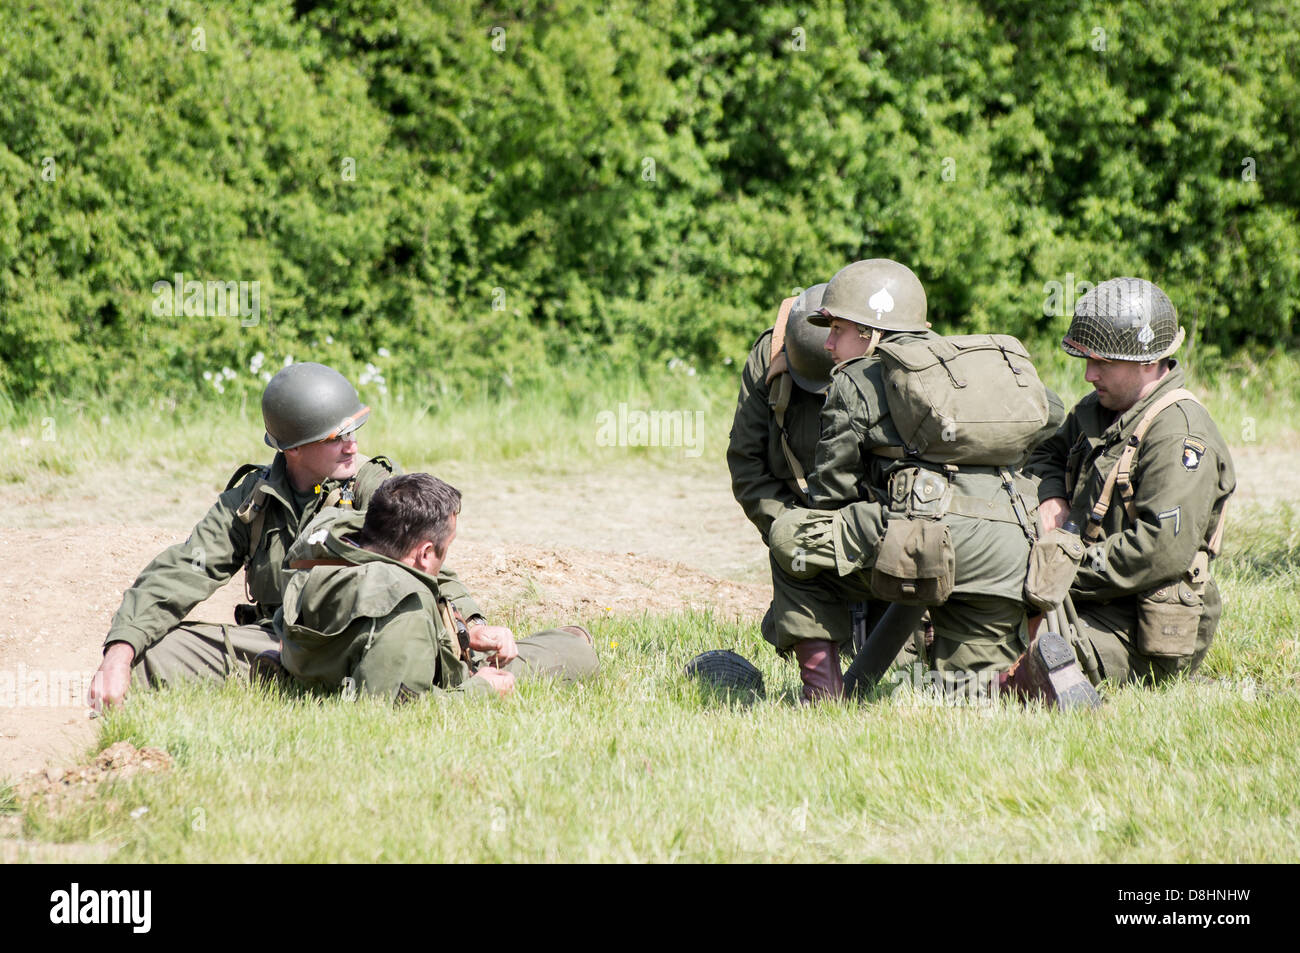 Overlord, D-Day re-enactment à Denmead 2013. Groupe de soldats américains assis et parler tout en vous relaxant. Banque D'Images